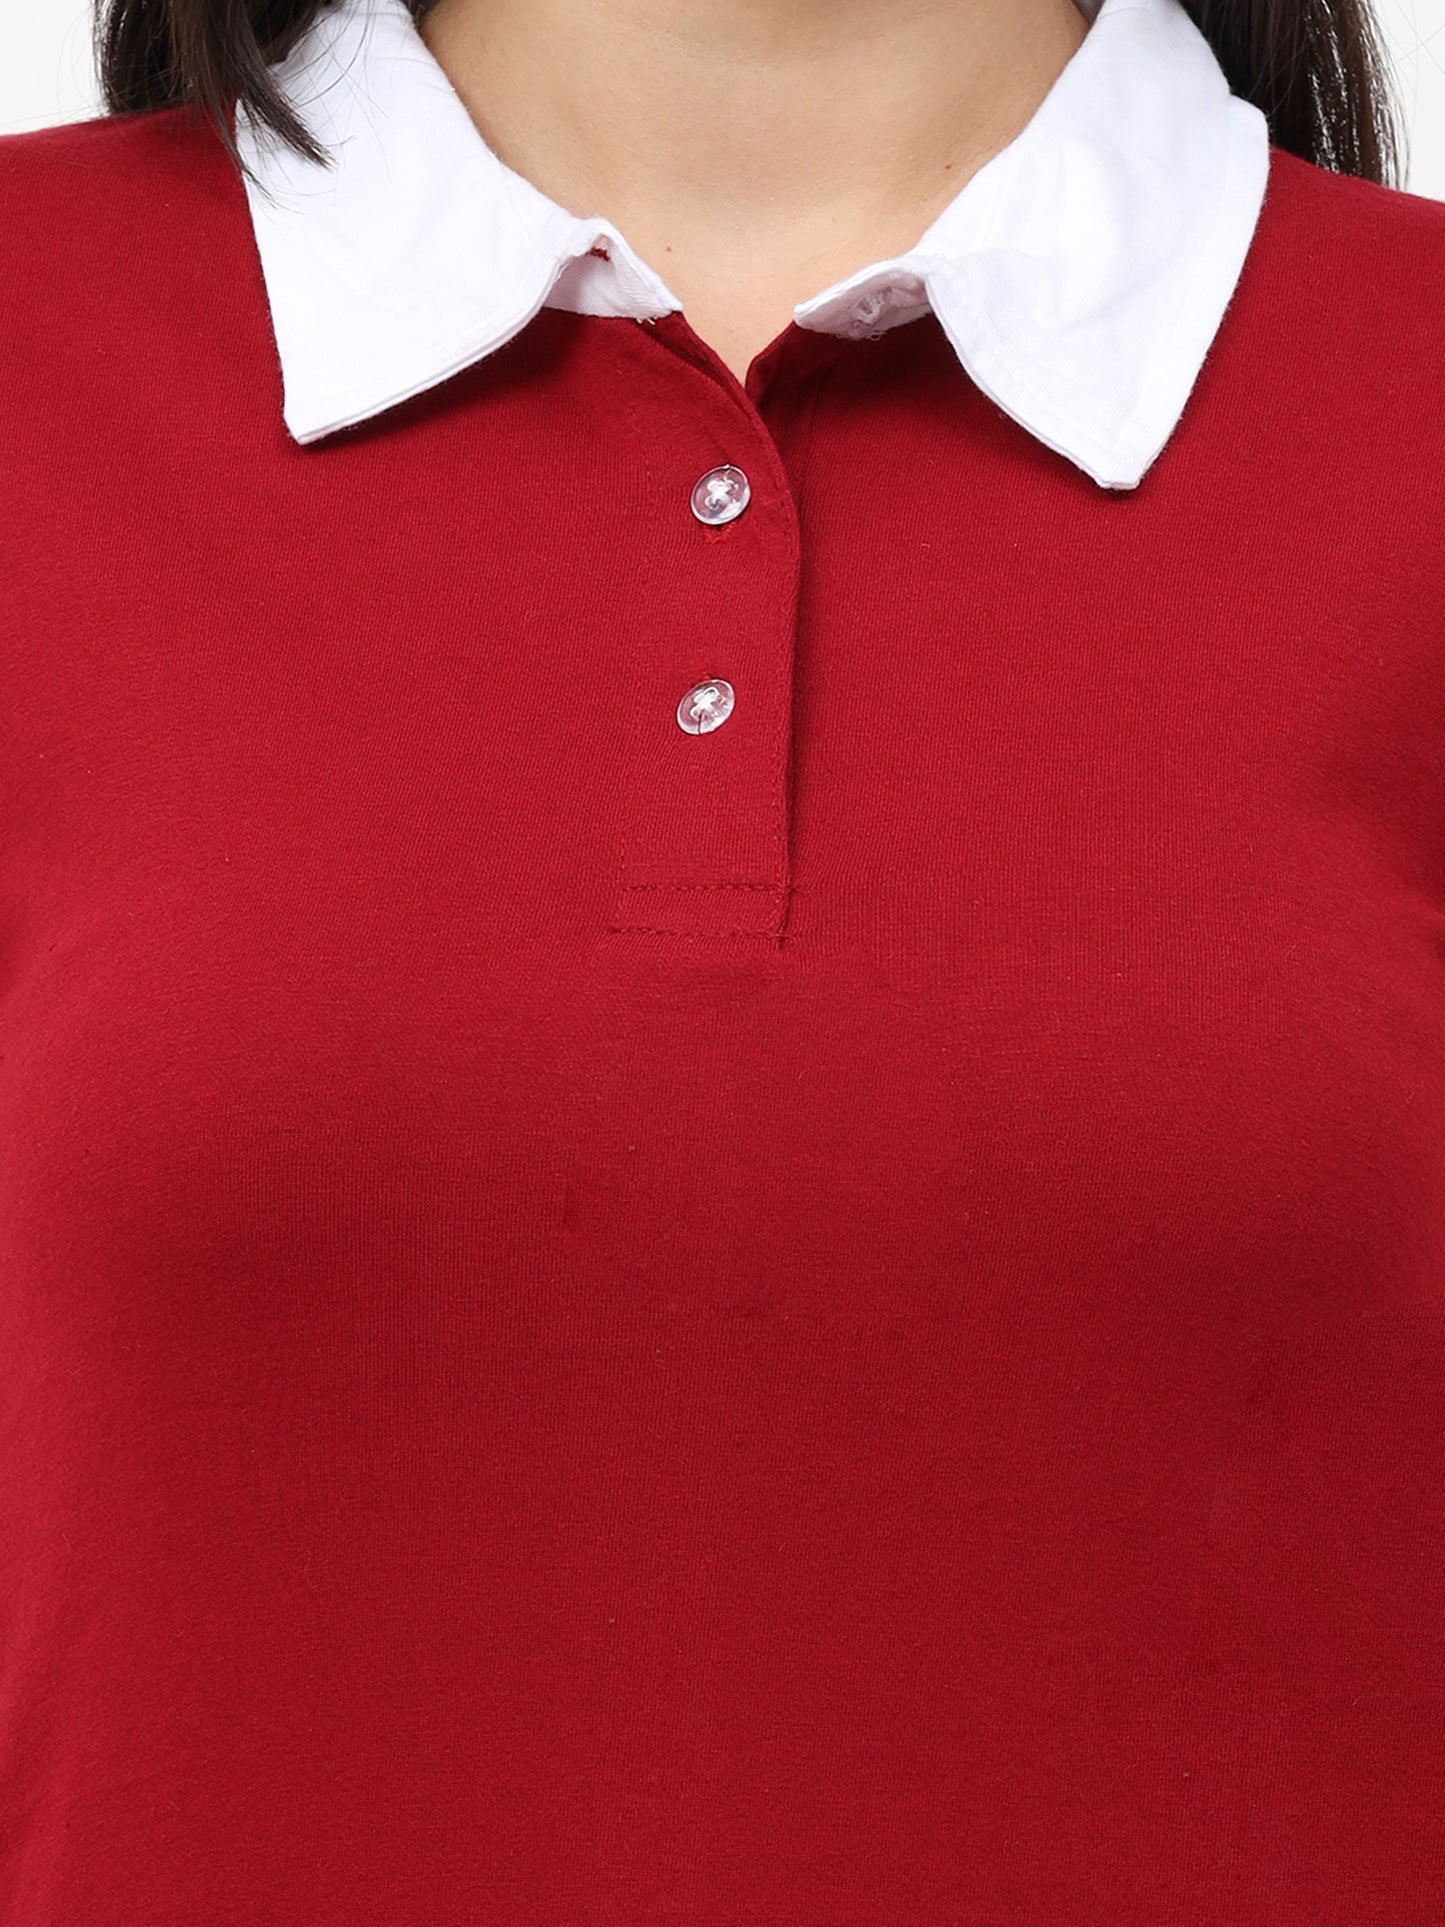 Women's Cotton Polo Neck Long Top